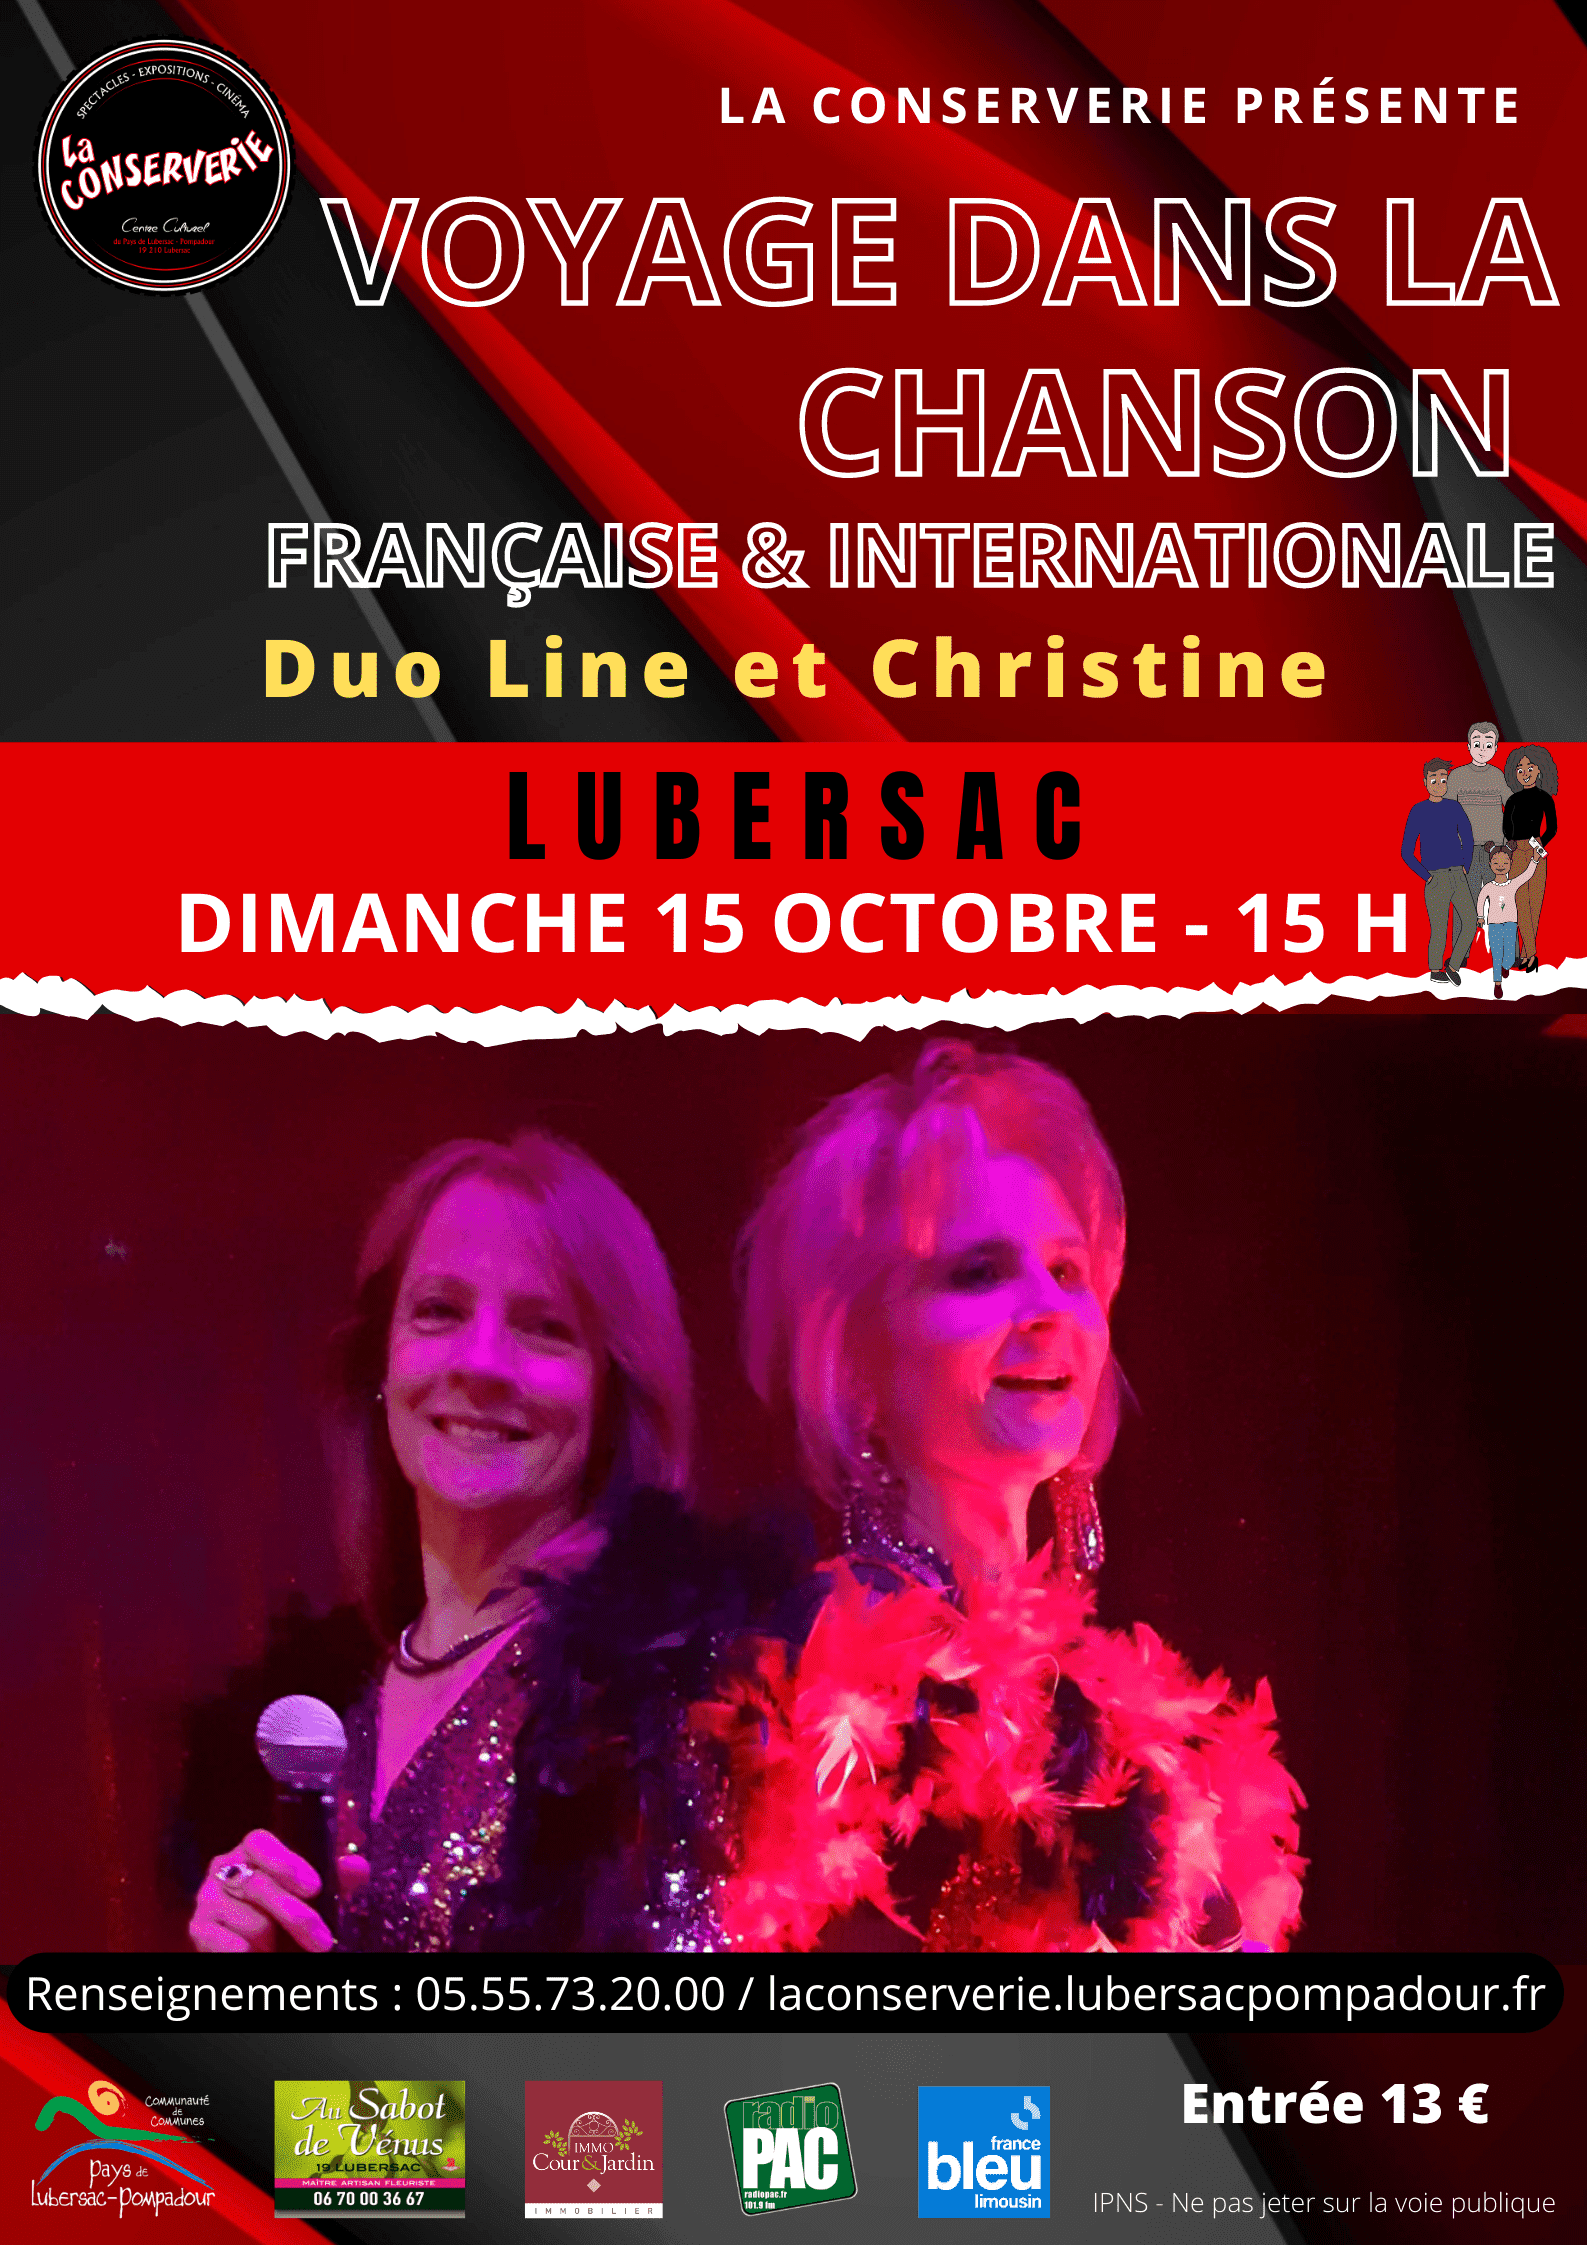 08 LA CONSERVERIE - Duo line et Christine voyage dans la chanson